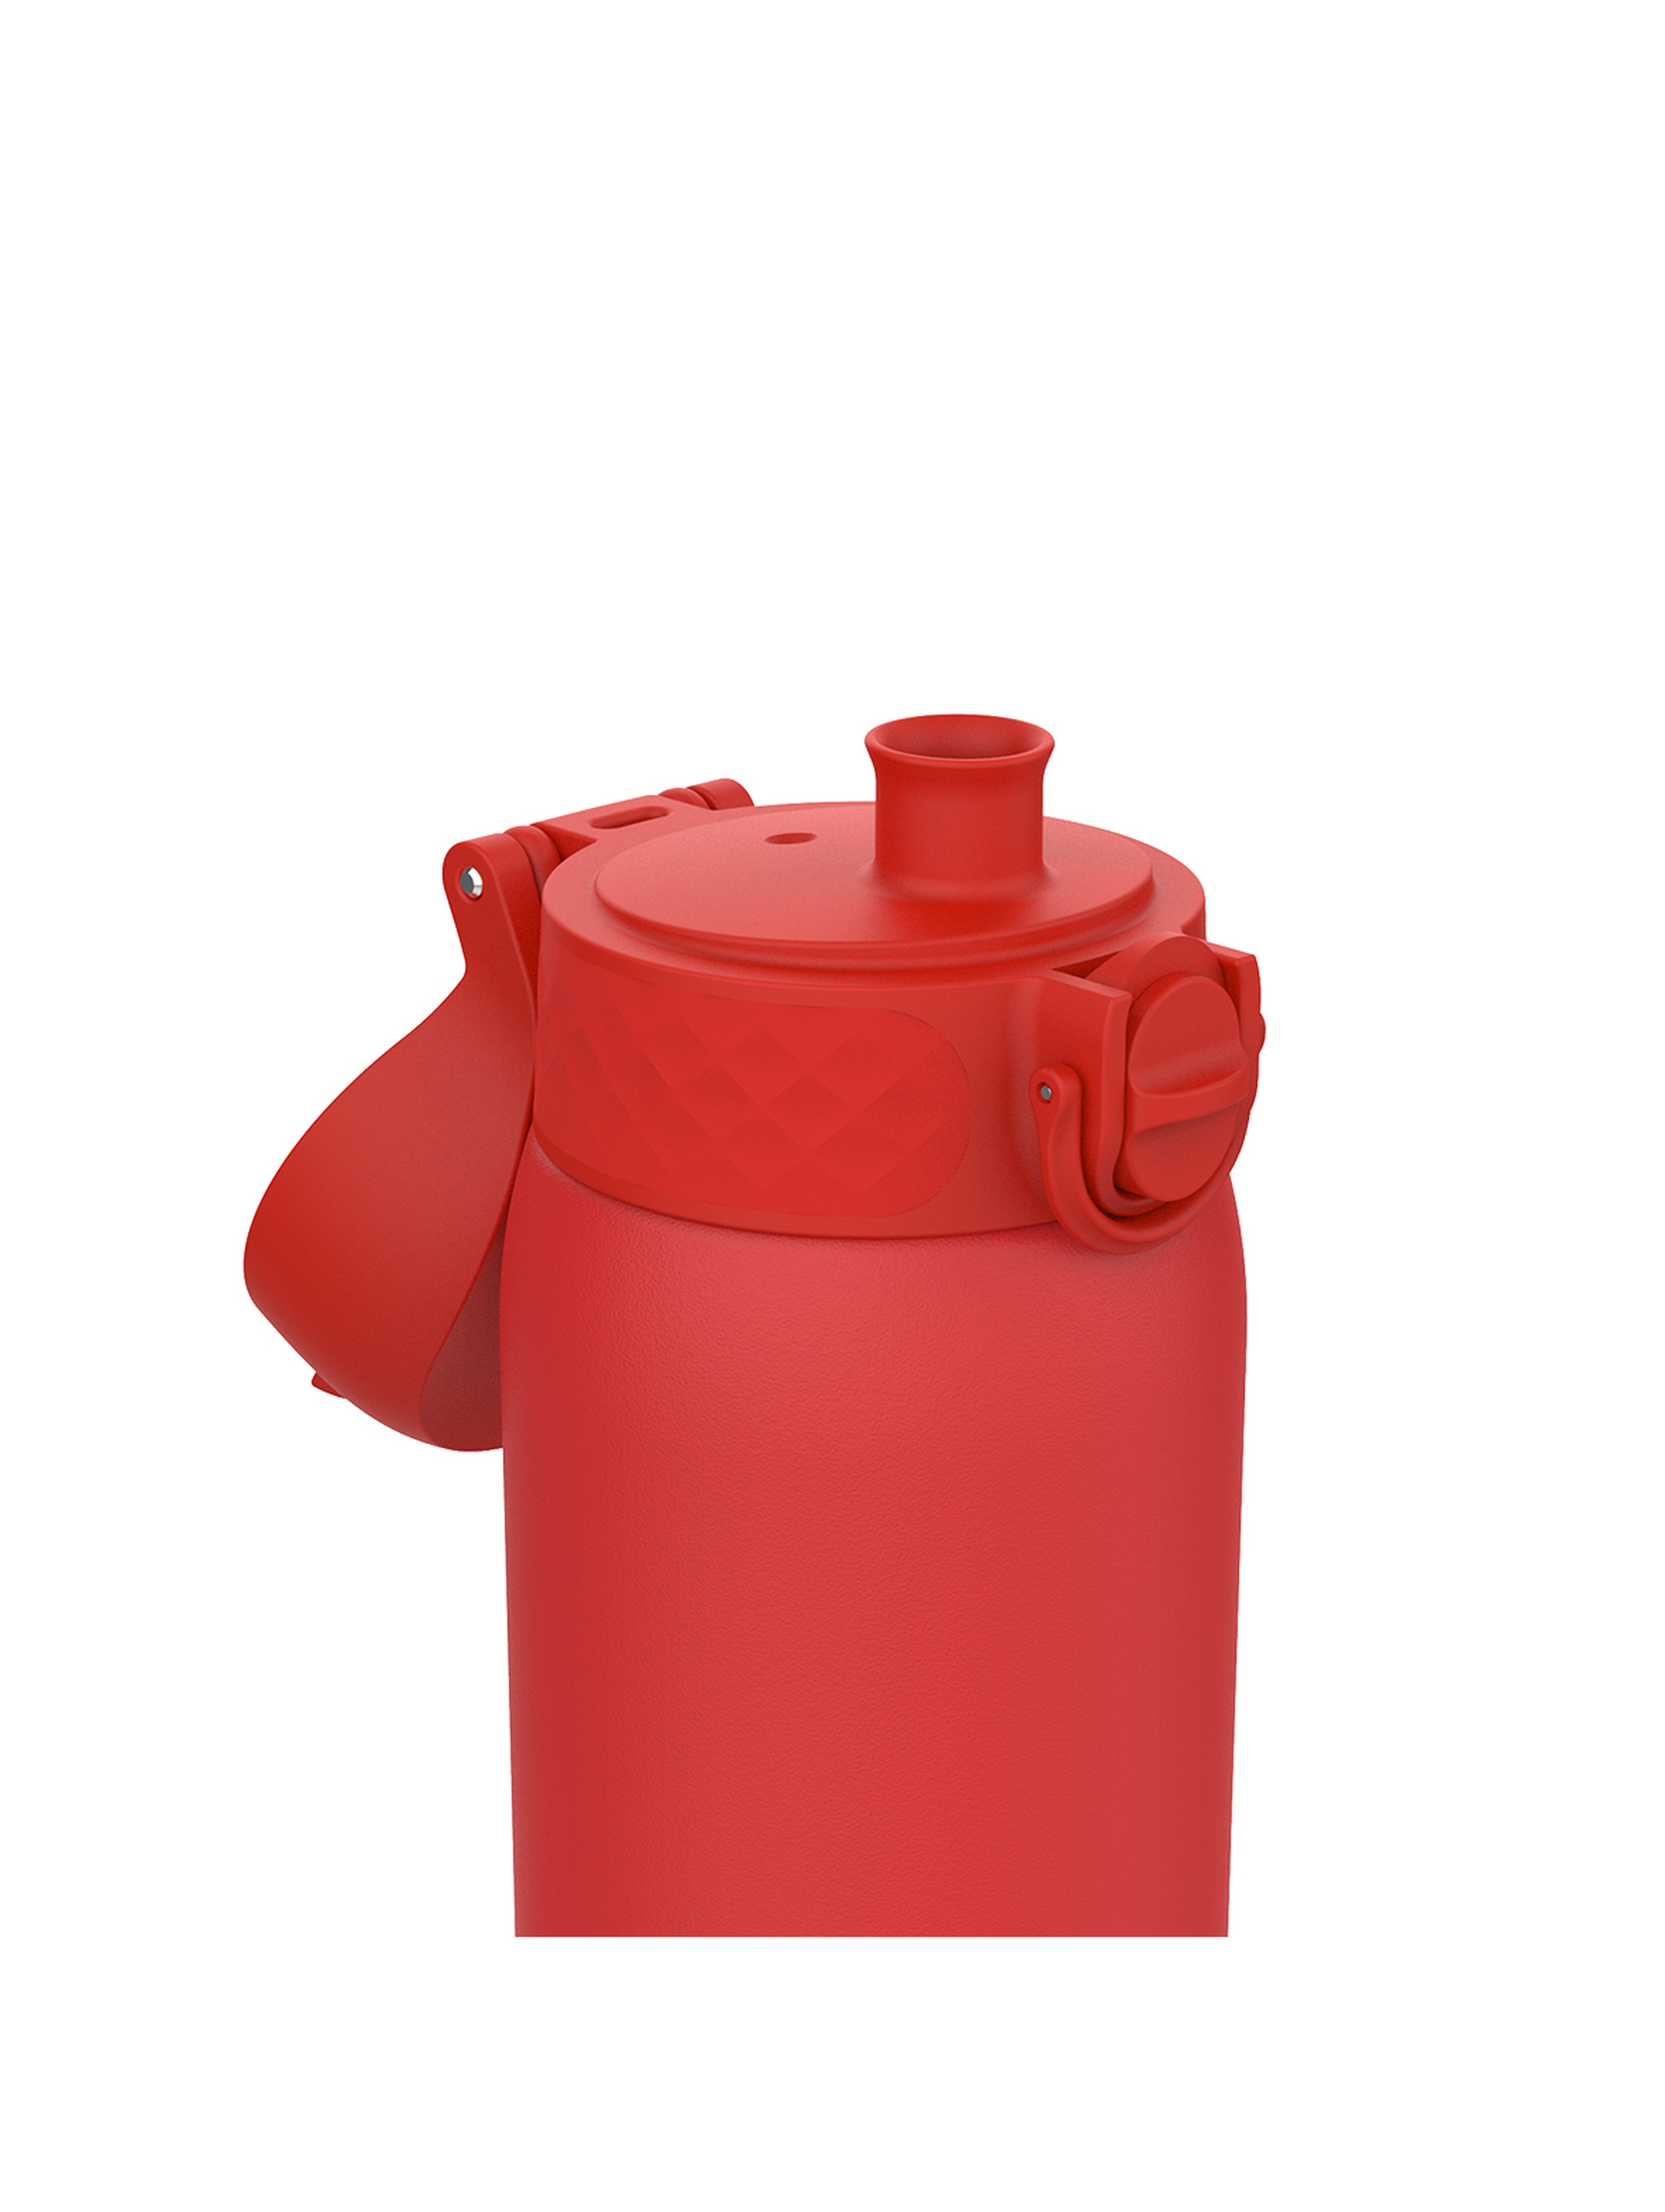 Butelka na wodę ION8 Single Wall Red 400ml - czerwona